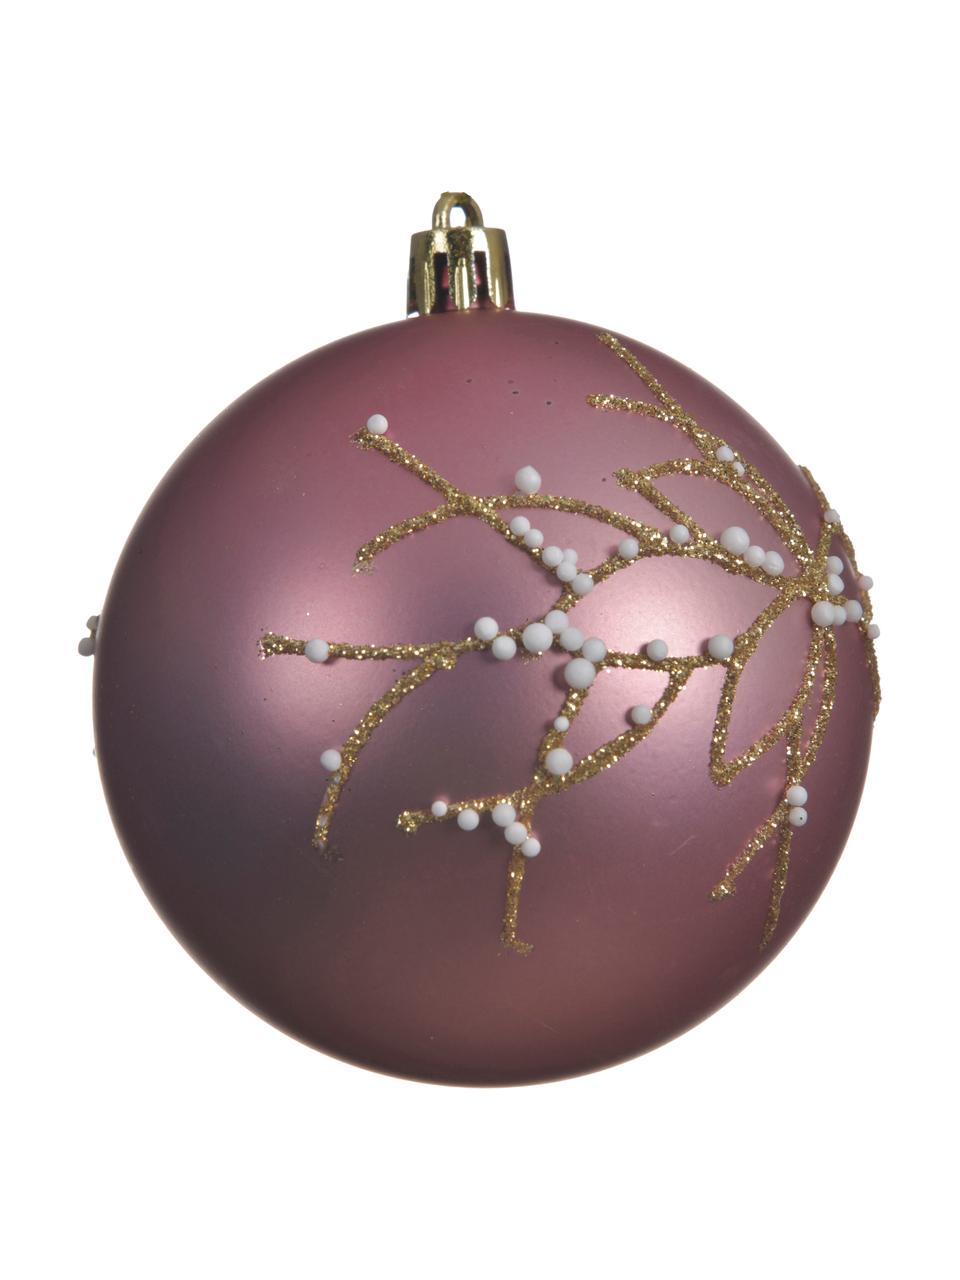 Bruchfeste Weihnachtskugeln Violetta, 4 Stück, Lila, Goldfarben, Ø 8 cm